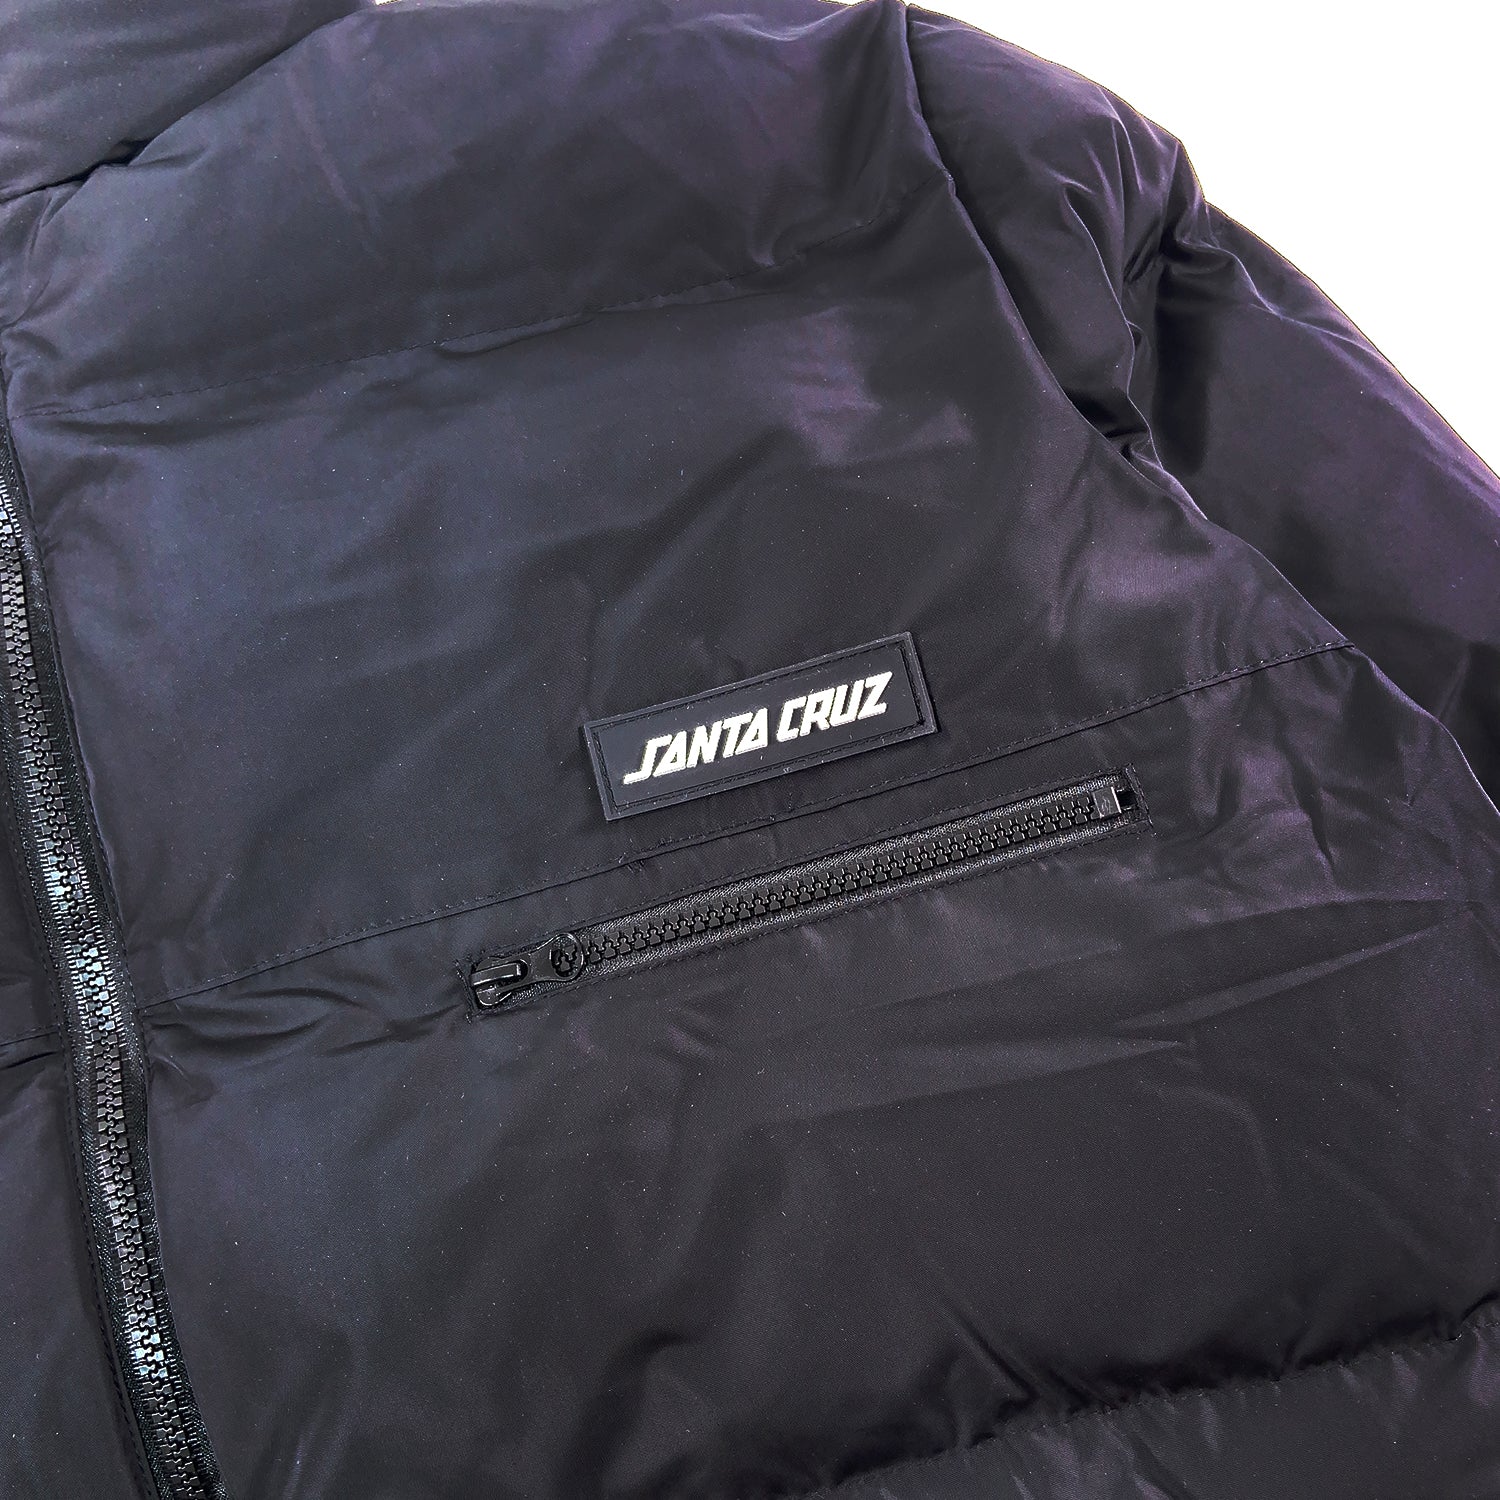 Santa Cruz Kane Jacket - Black - Prime Delux Store